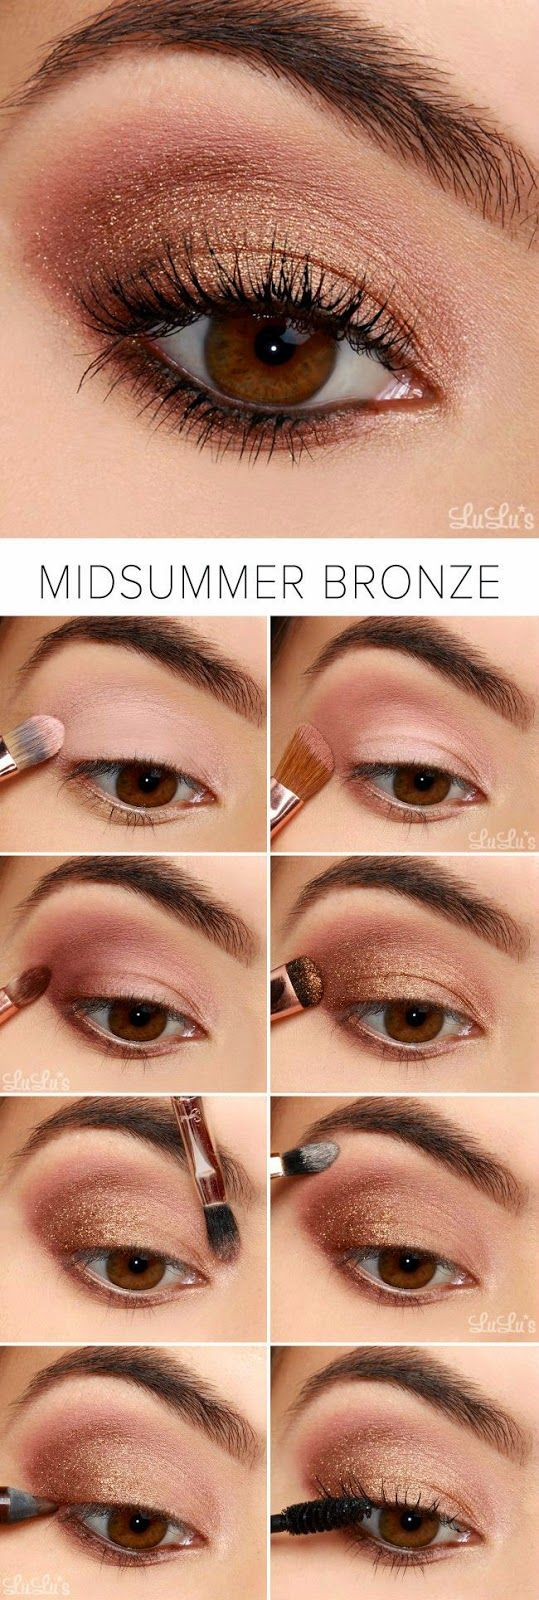 Summer Eye Makeup Latest Summer Makeup Ideas Trends 2019 2020 Beauty Tips